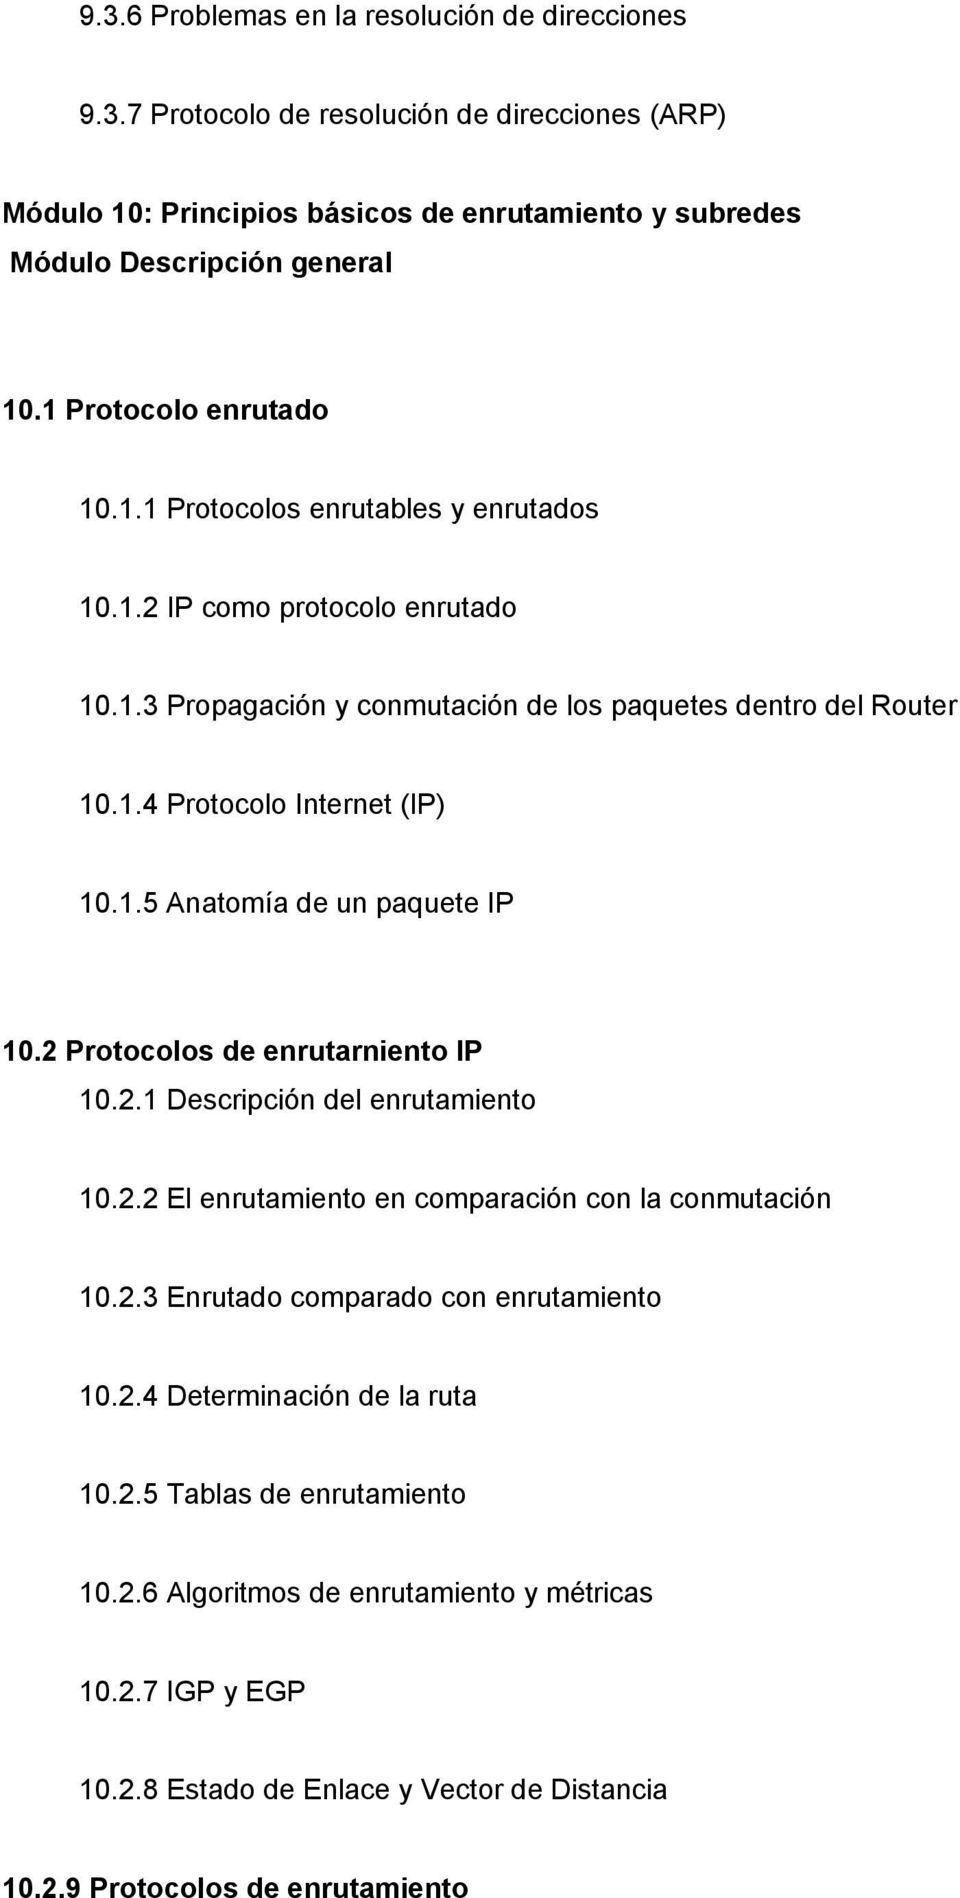 2 Protocolos de enrutarniento IP 10.2.1 Descripción del enrutamiento 10.2.2 El enrutamiento en comparación con la conmutación 10.2.3 Enrutado comparado con enrutamiento 10.2.4 Determinación de la ruta 10.